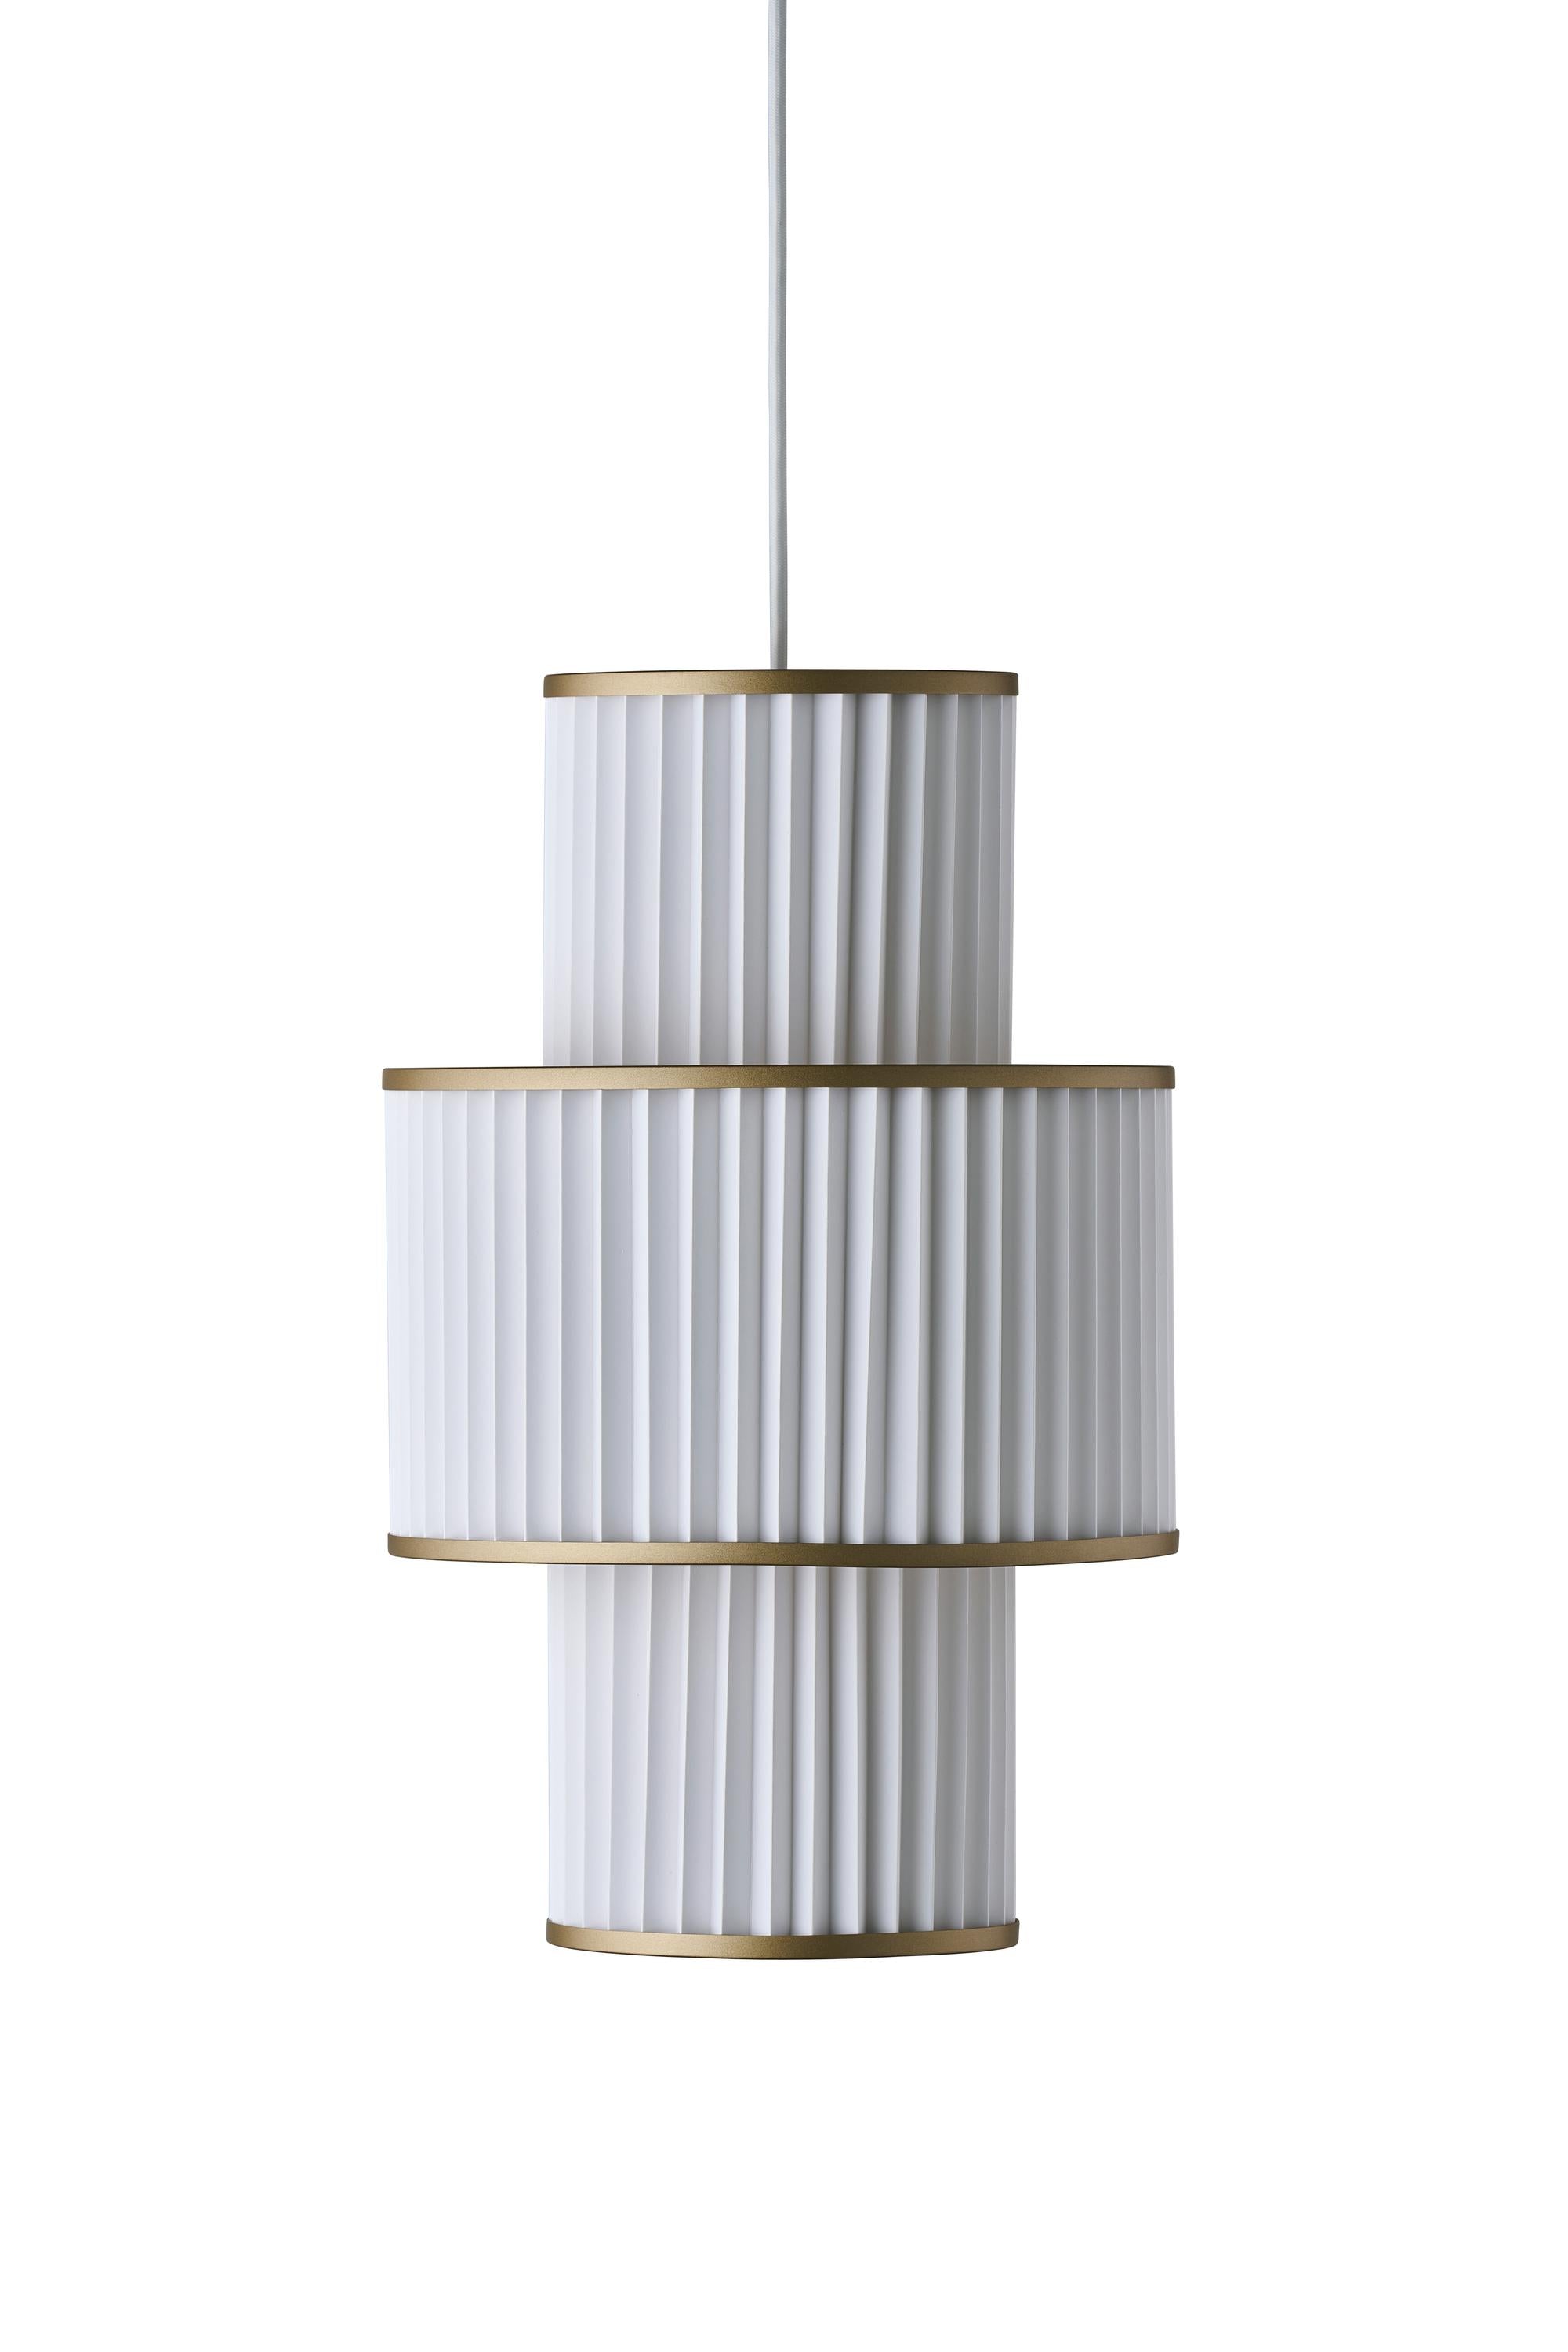 Le Klint Plivello Suspension Lamp Golden/White met 3 tinten (S M S)